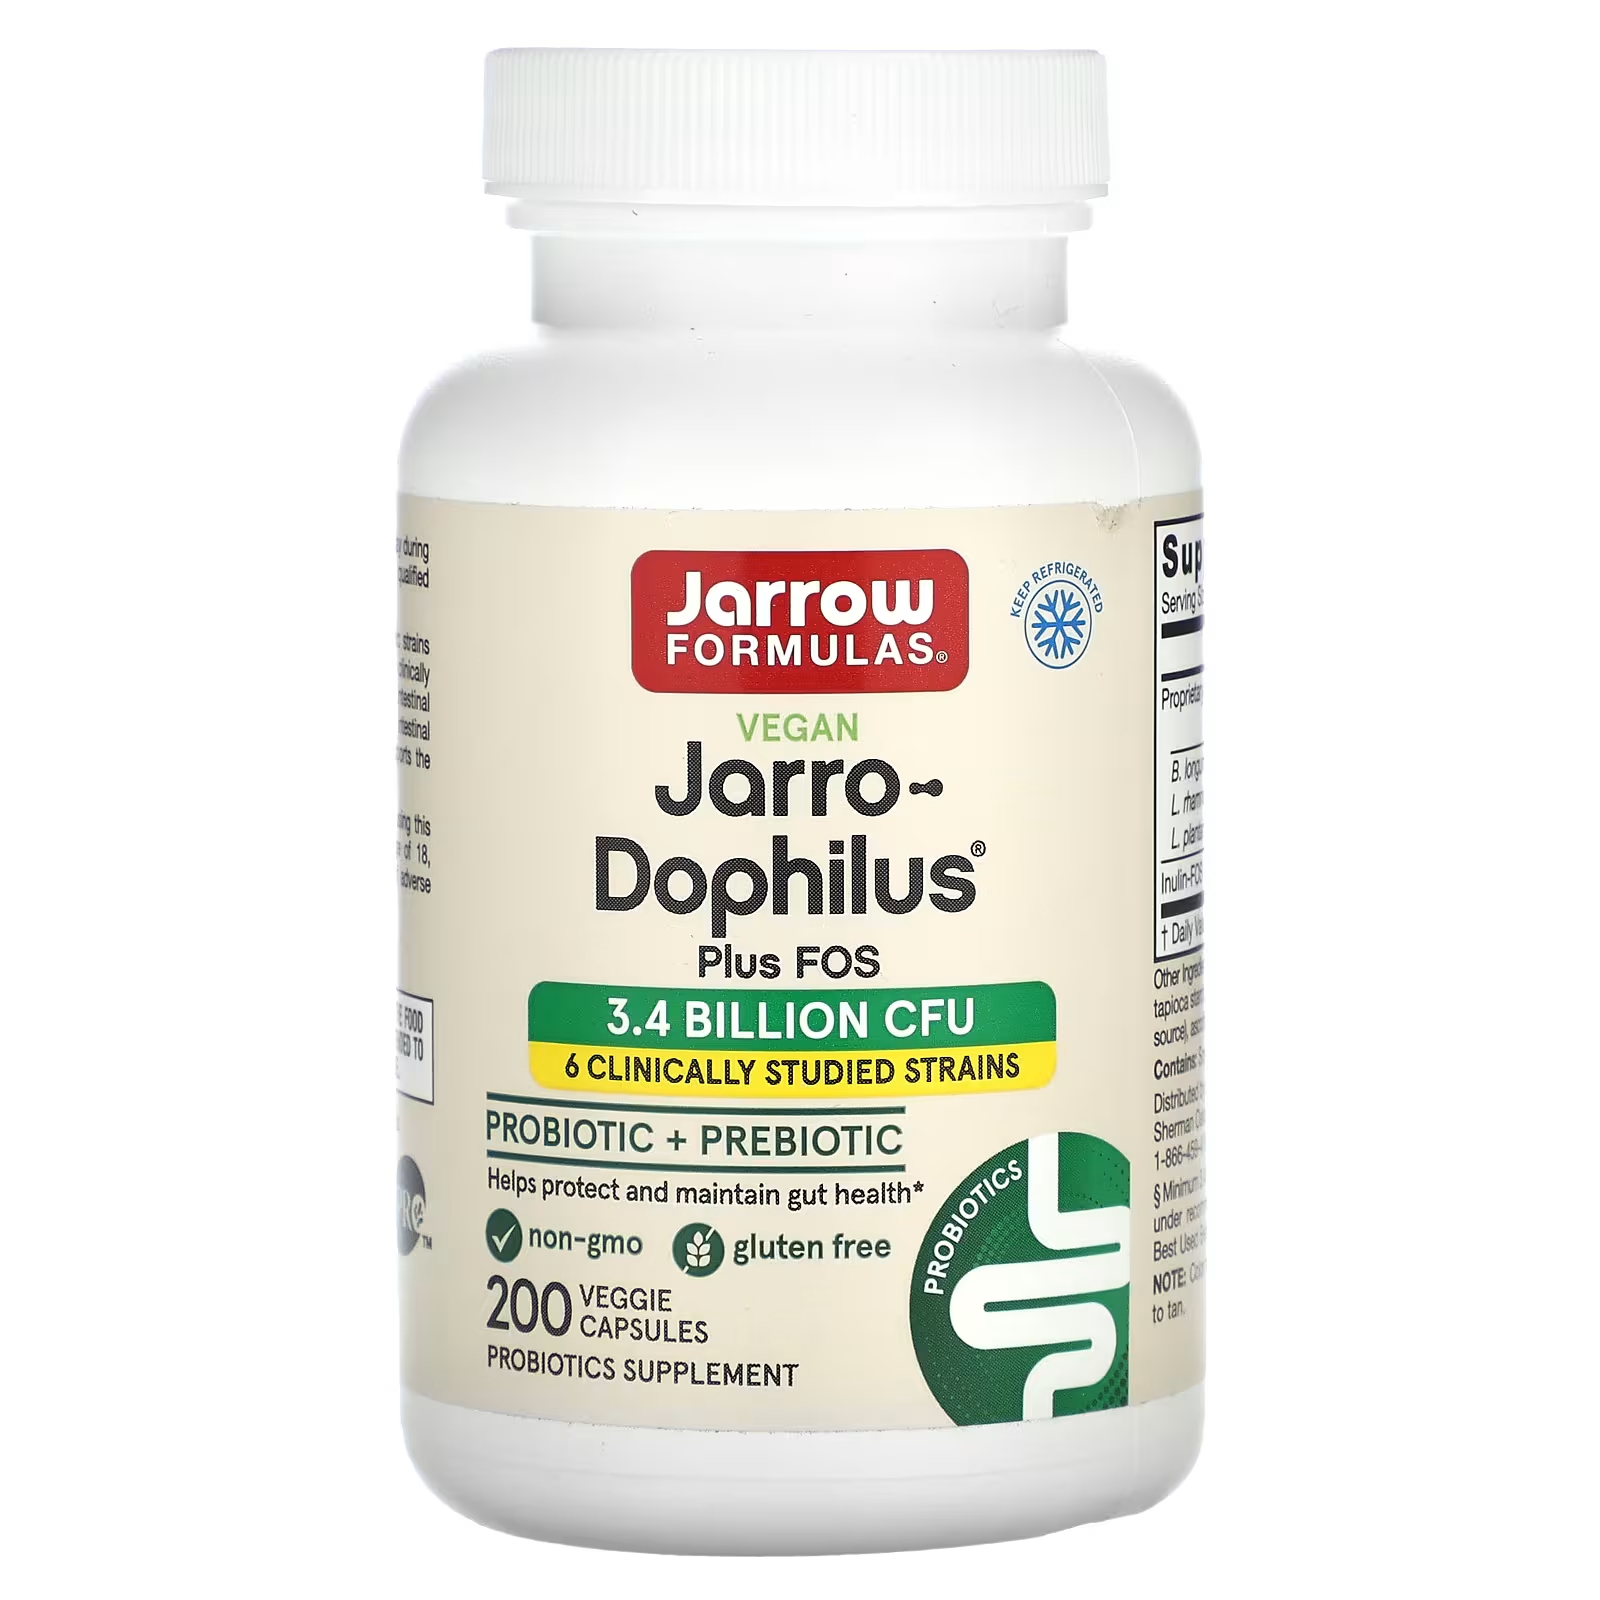 пробиотики для детей со вкусом малины jarrow formulas jarro dophilus kids 1 billion cfu в жевательных таблетках 60 шт Пробиотики + пребиотики Jarrow Formulas Jarro-Dophilus Plus FOS, 200 растительных капсул